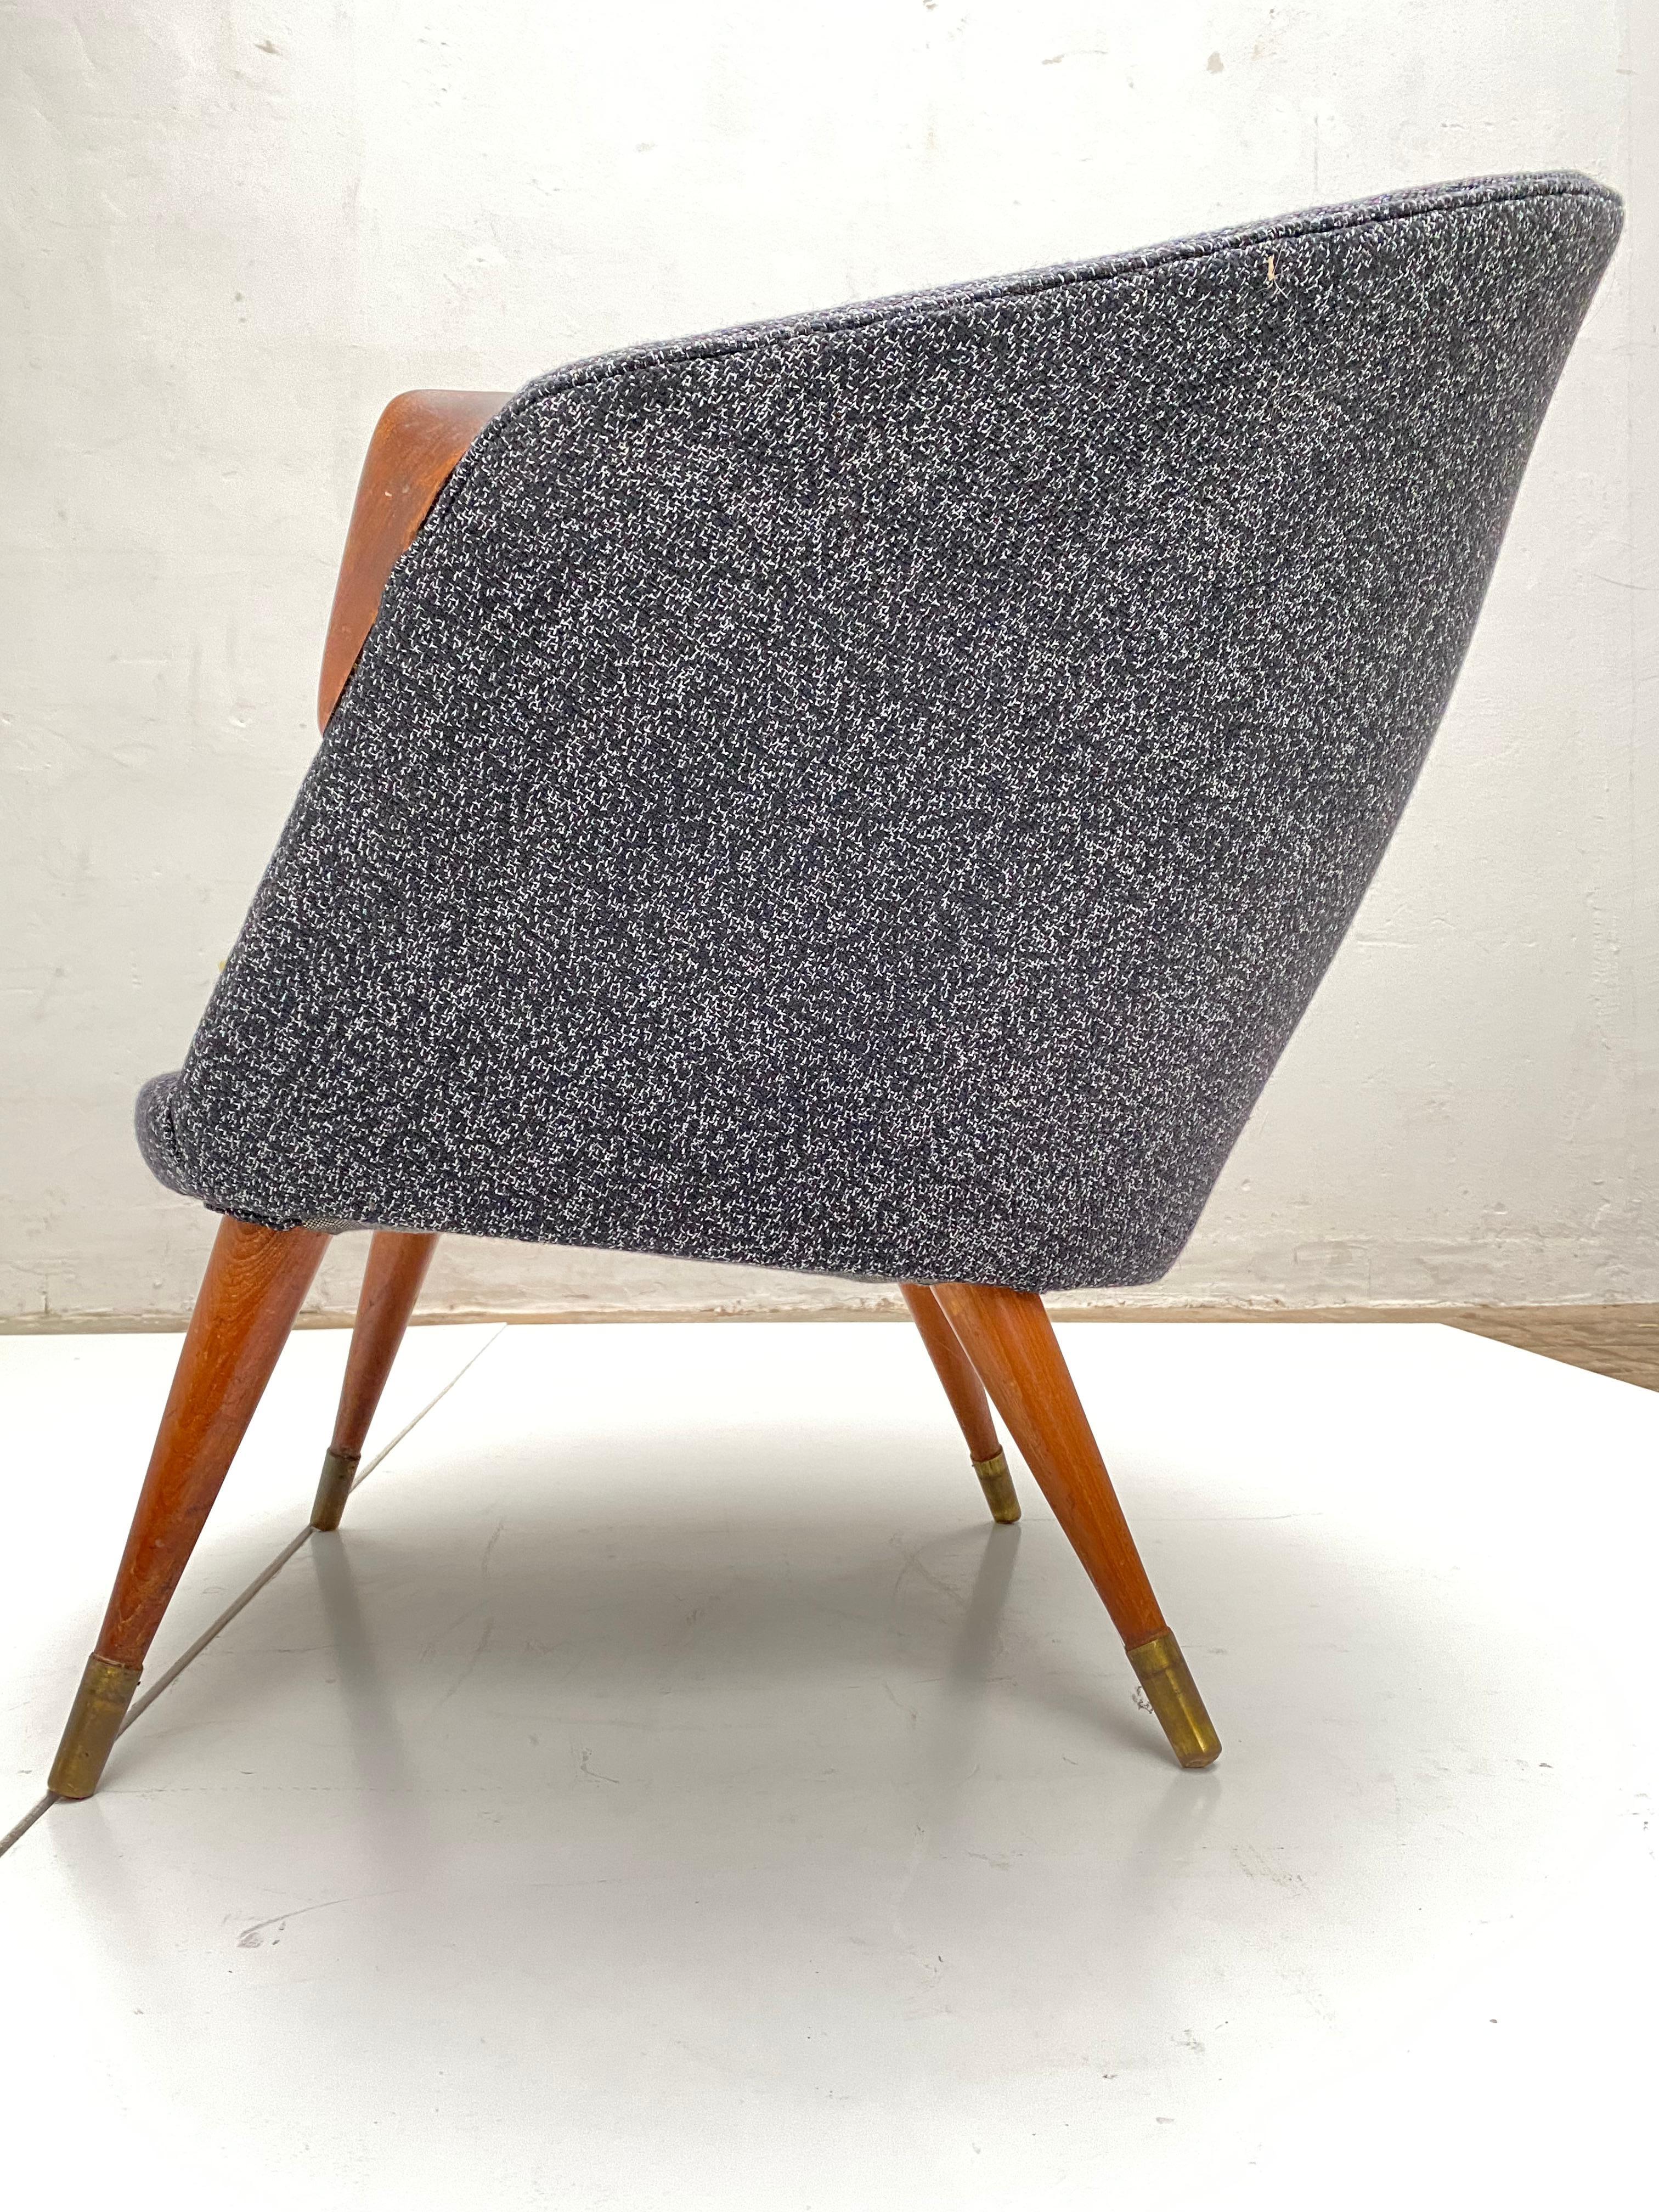 Scandinavian Modern Scandinavian Teak Wool and Brass Lounge Chair 1950s New Upholstery!